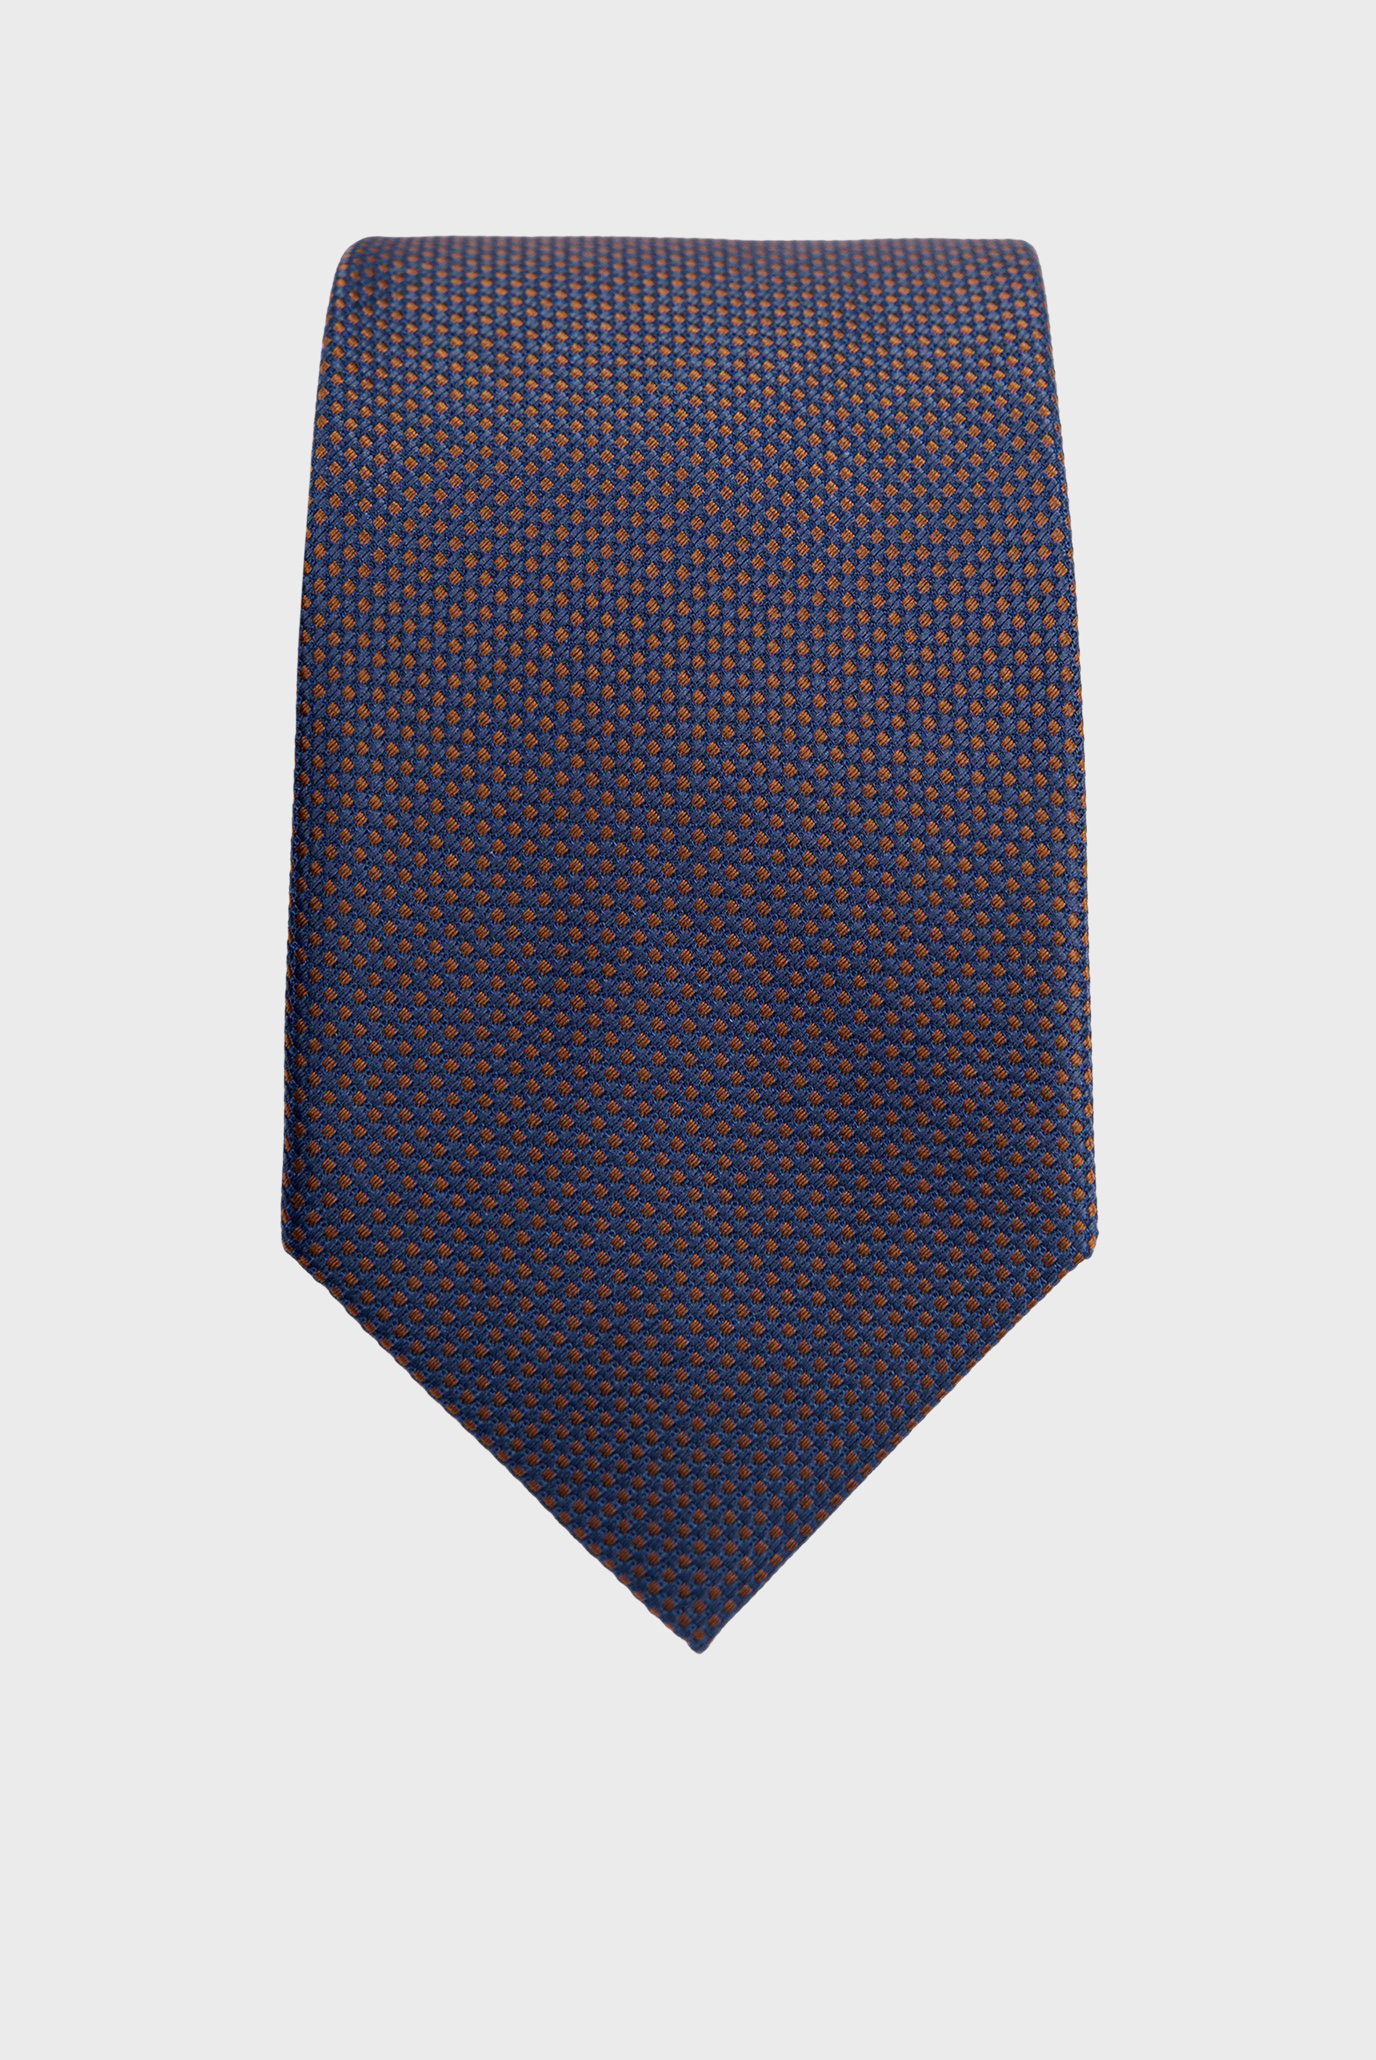 Чоловіча темно-синя краватка з візерунком 1